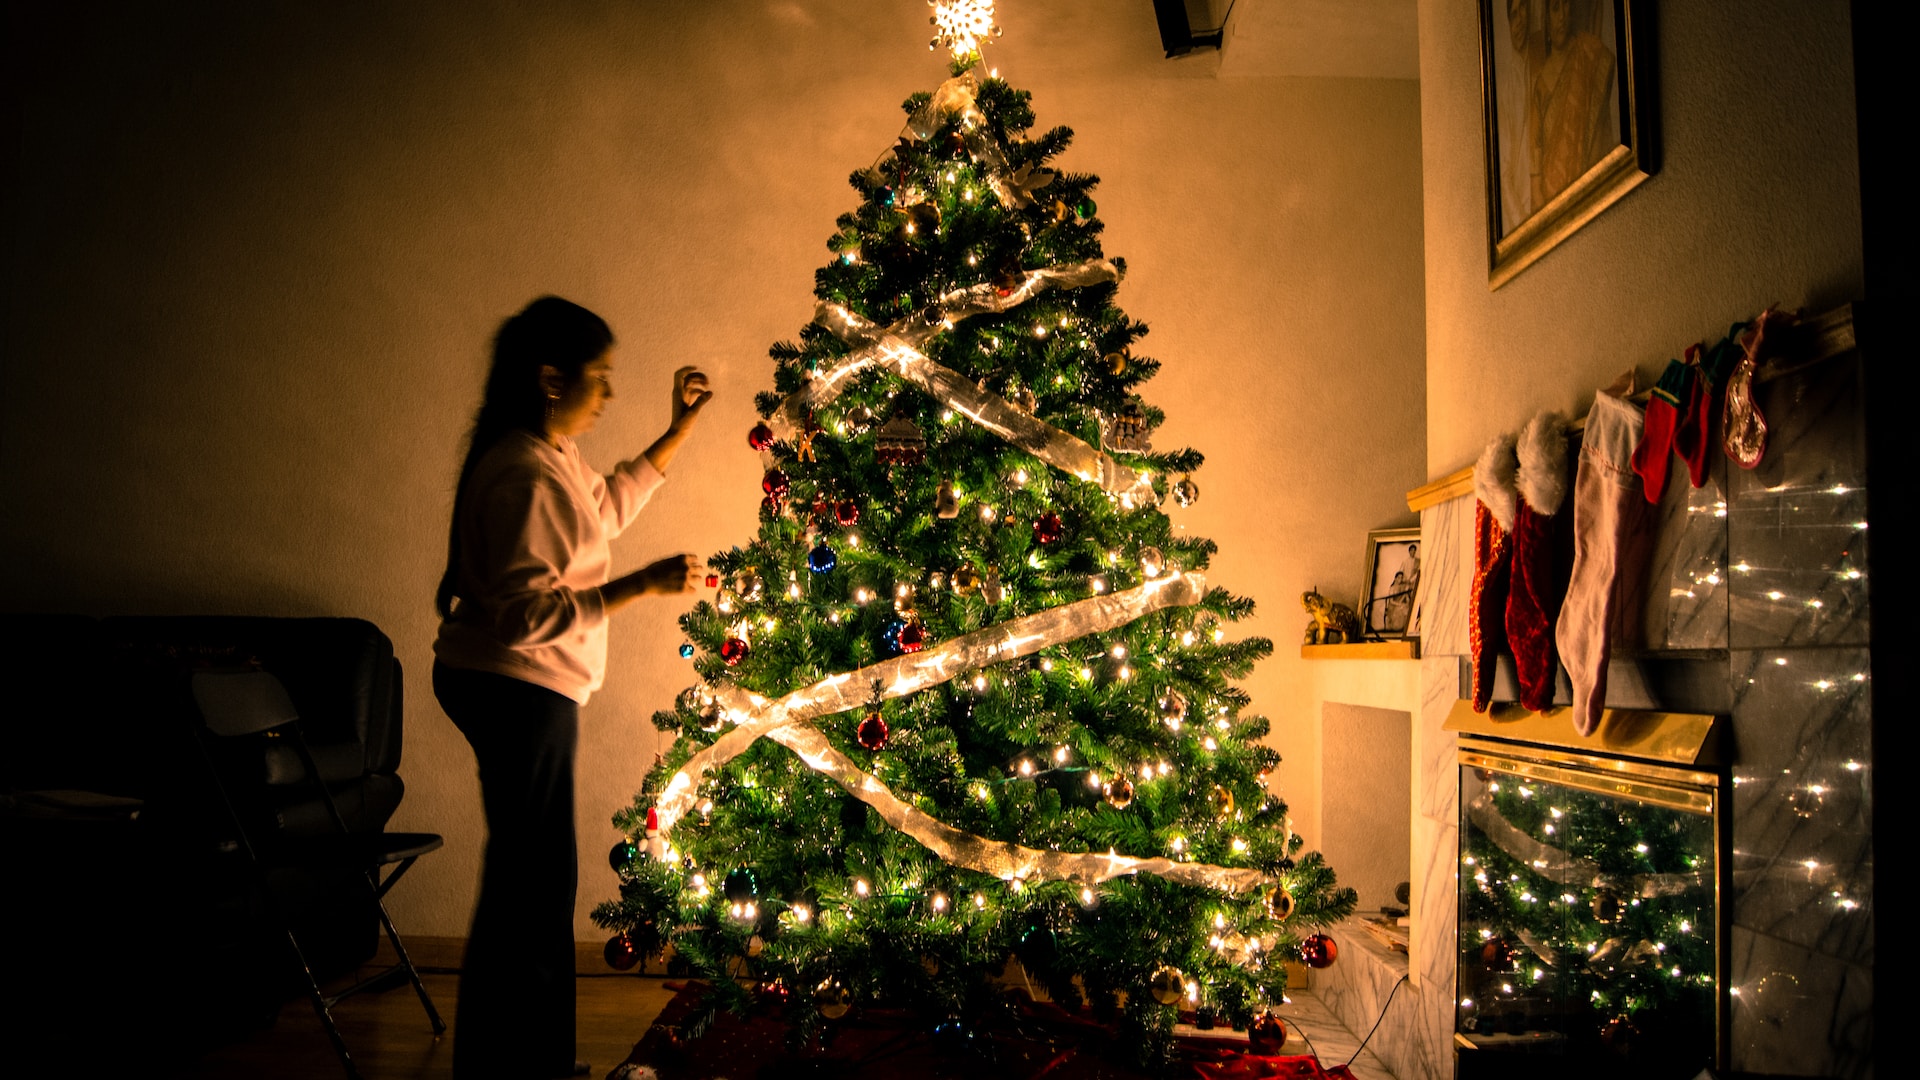 Warum wird ein Weihnachtsbaum geschmückt?